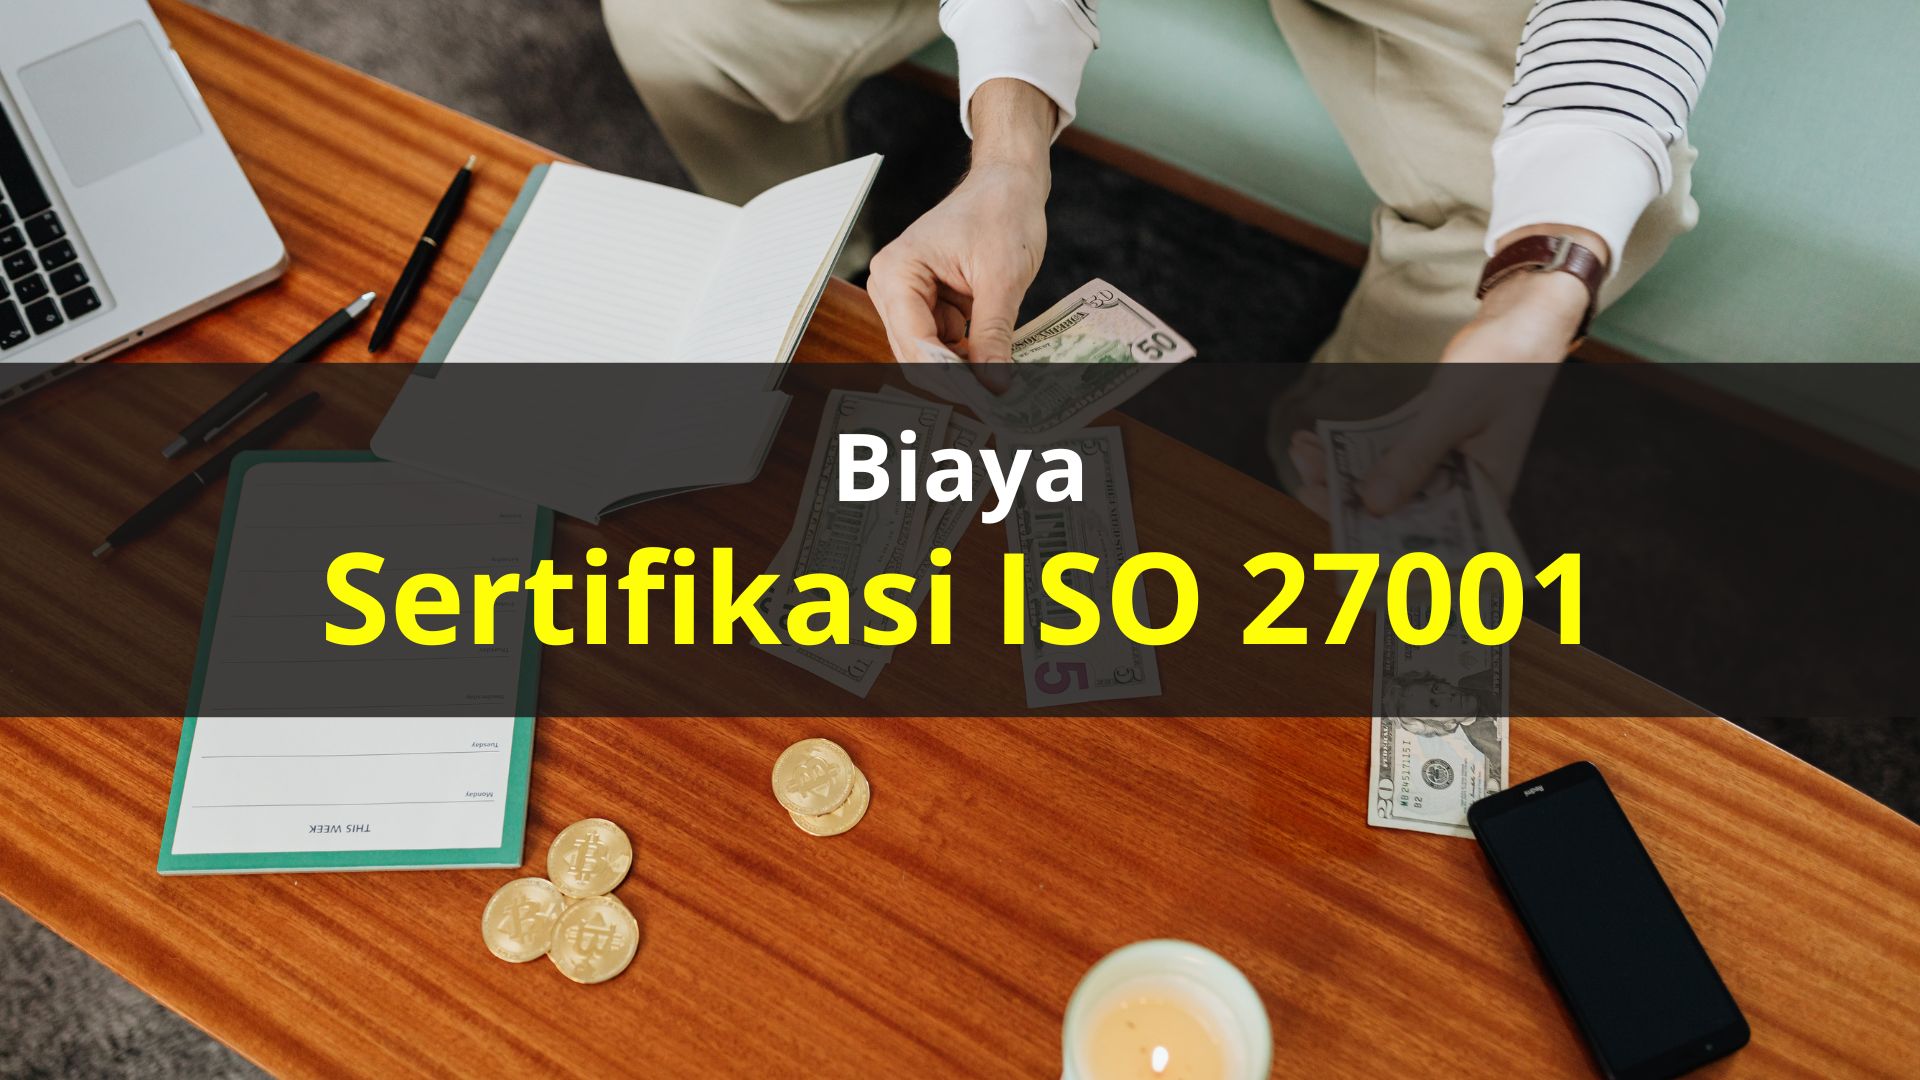 Biaya Sertifikasi ISO 27001